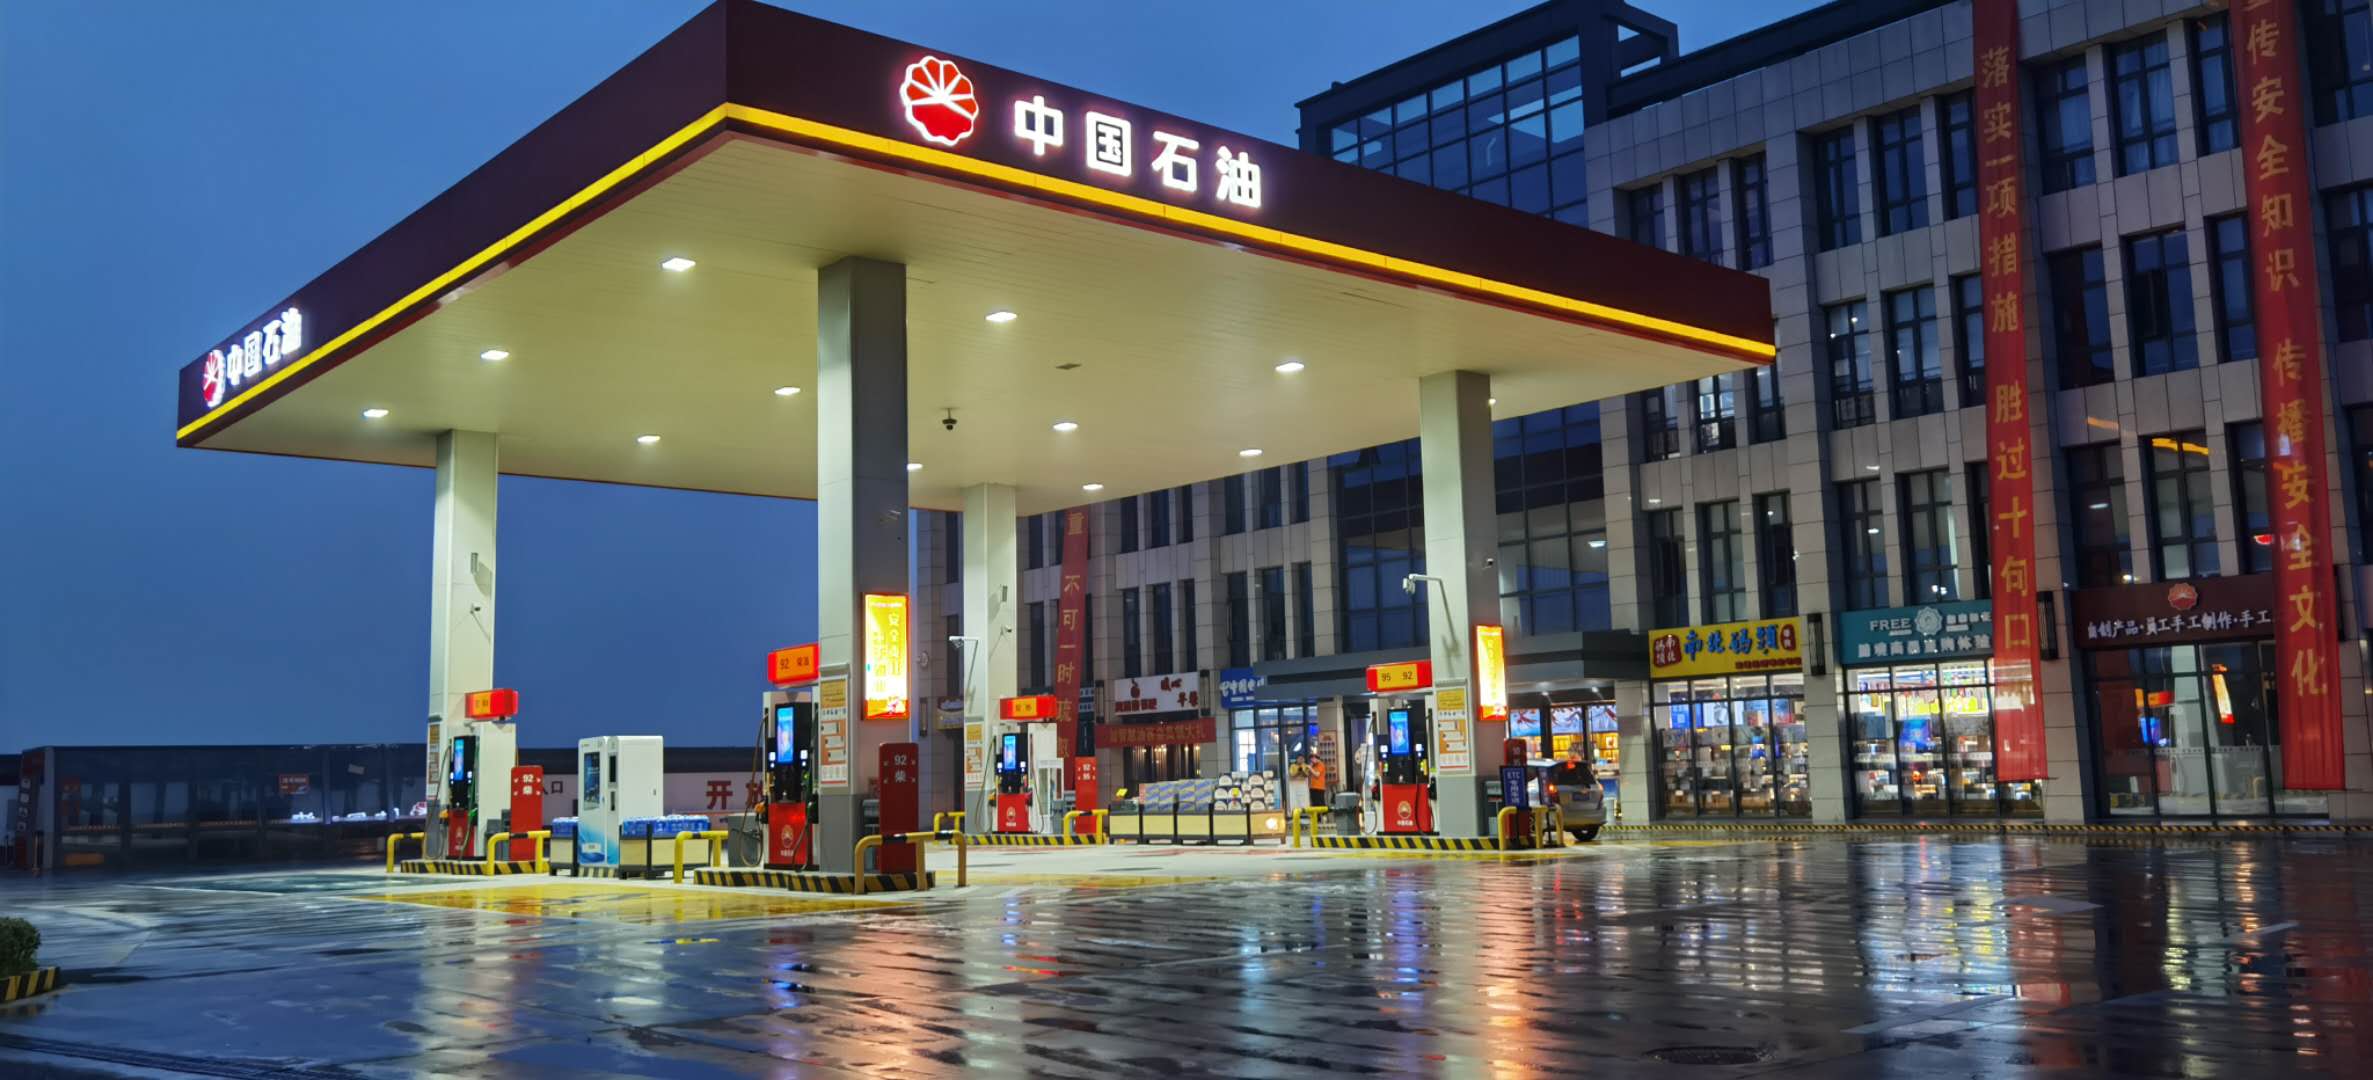 中国、ガソリンスタンドも自動運営へ 電子決済や販売データ一体管理で